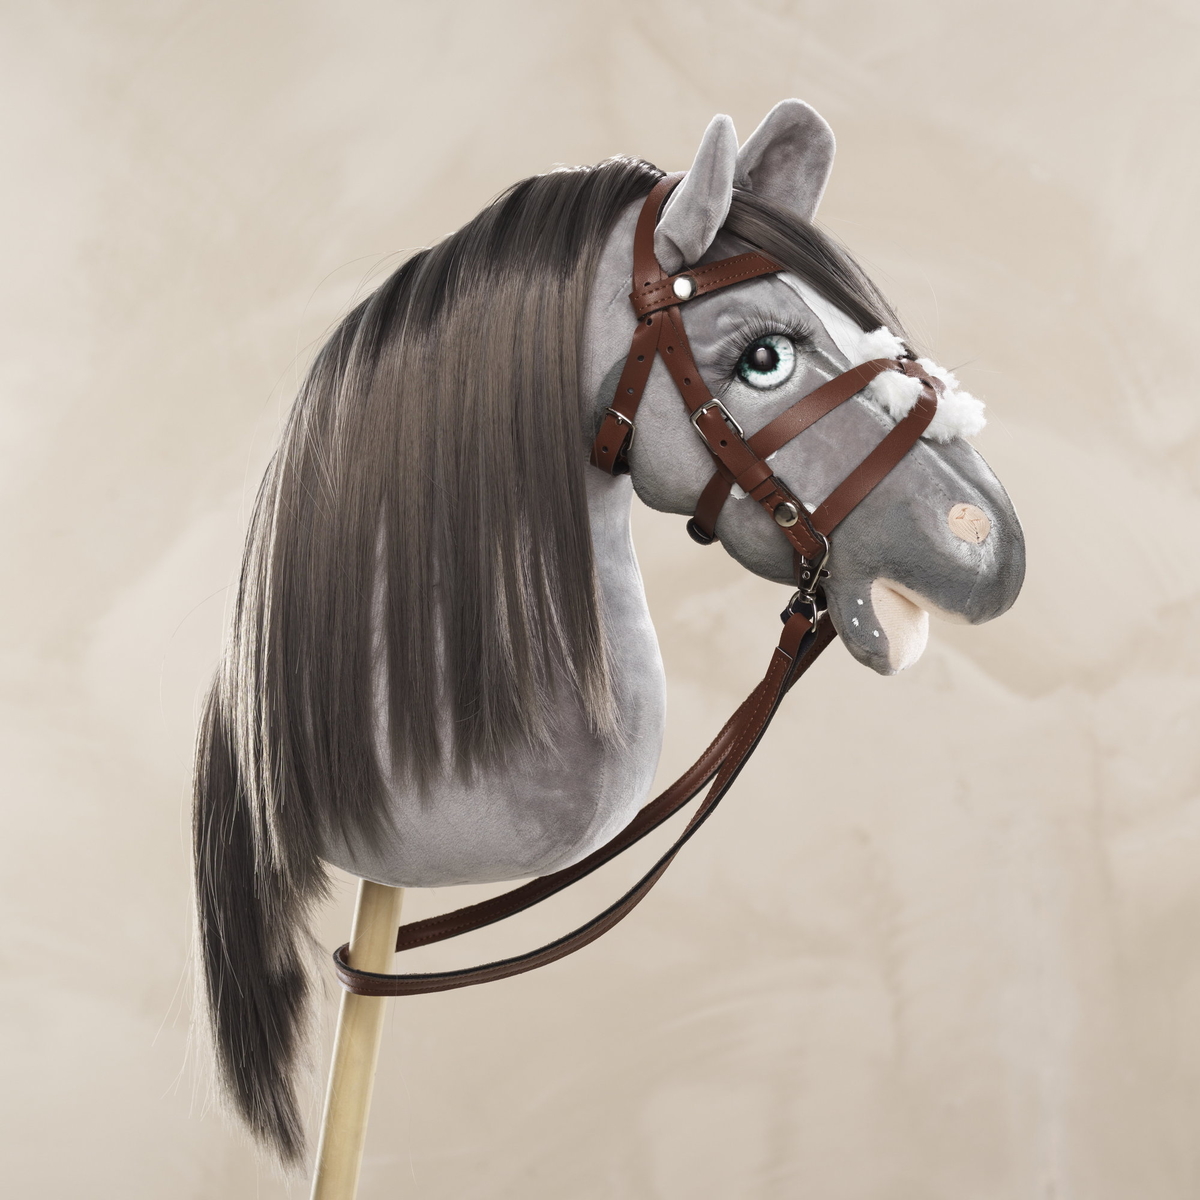 Guide: gör en Welsh pony-käpphäst